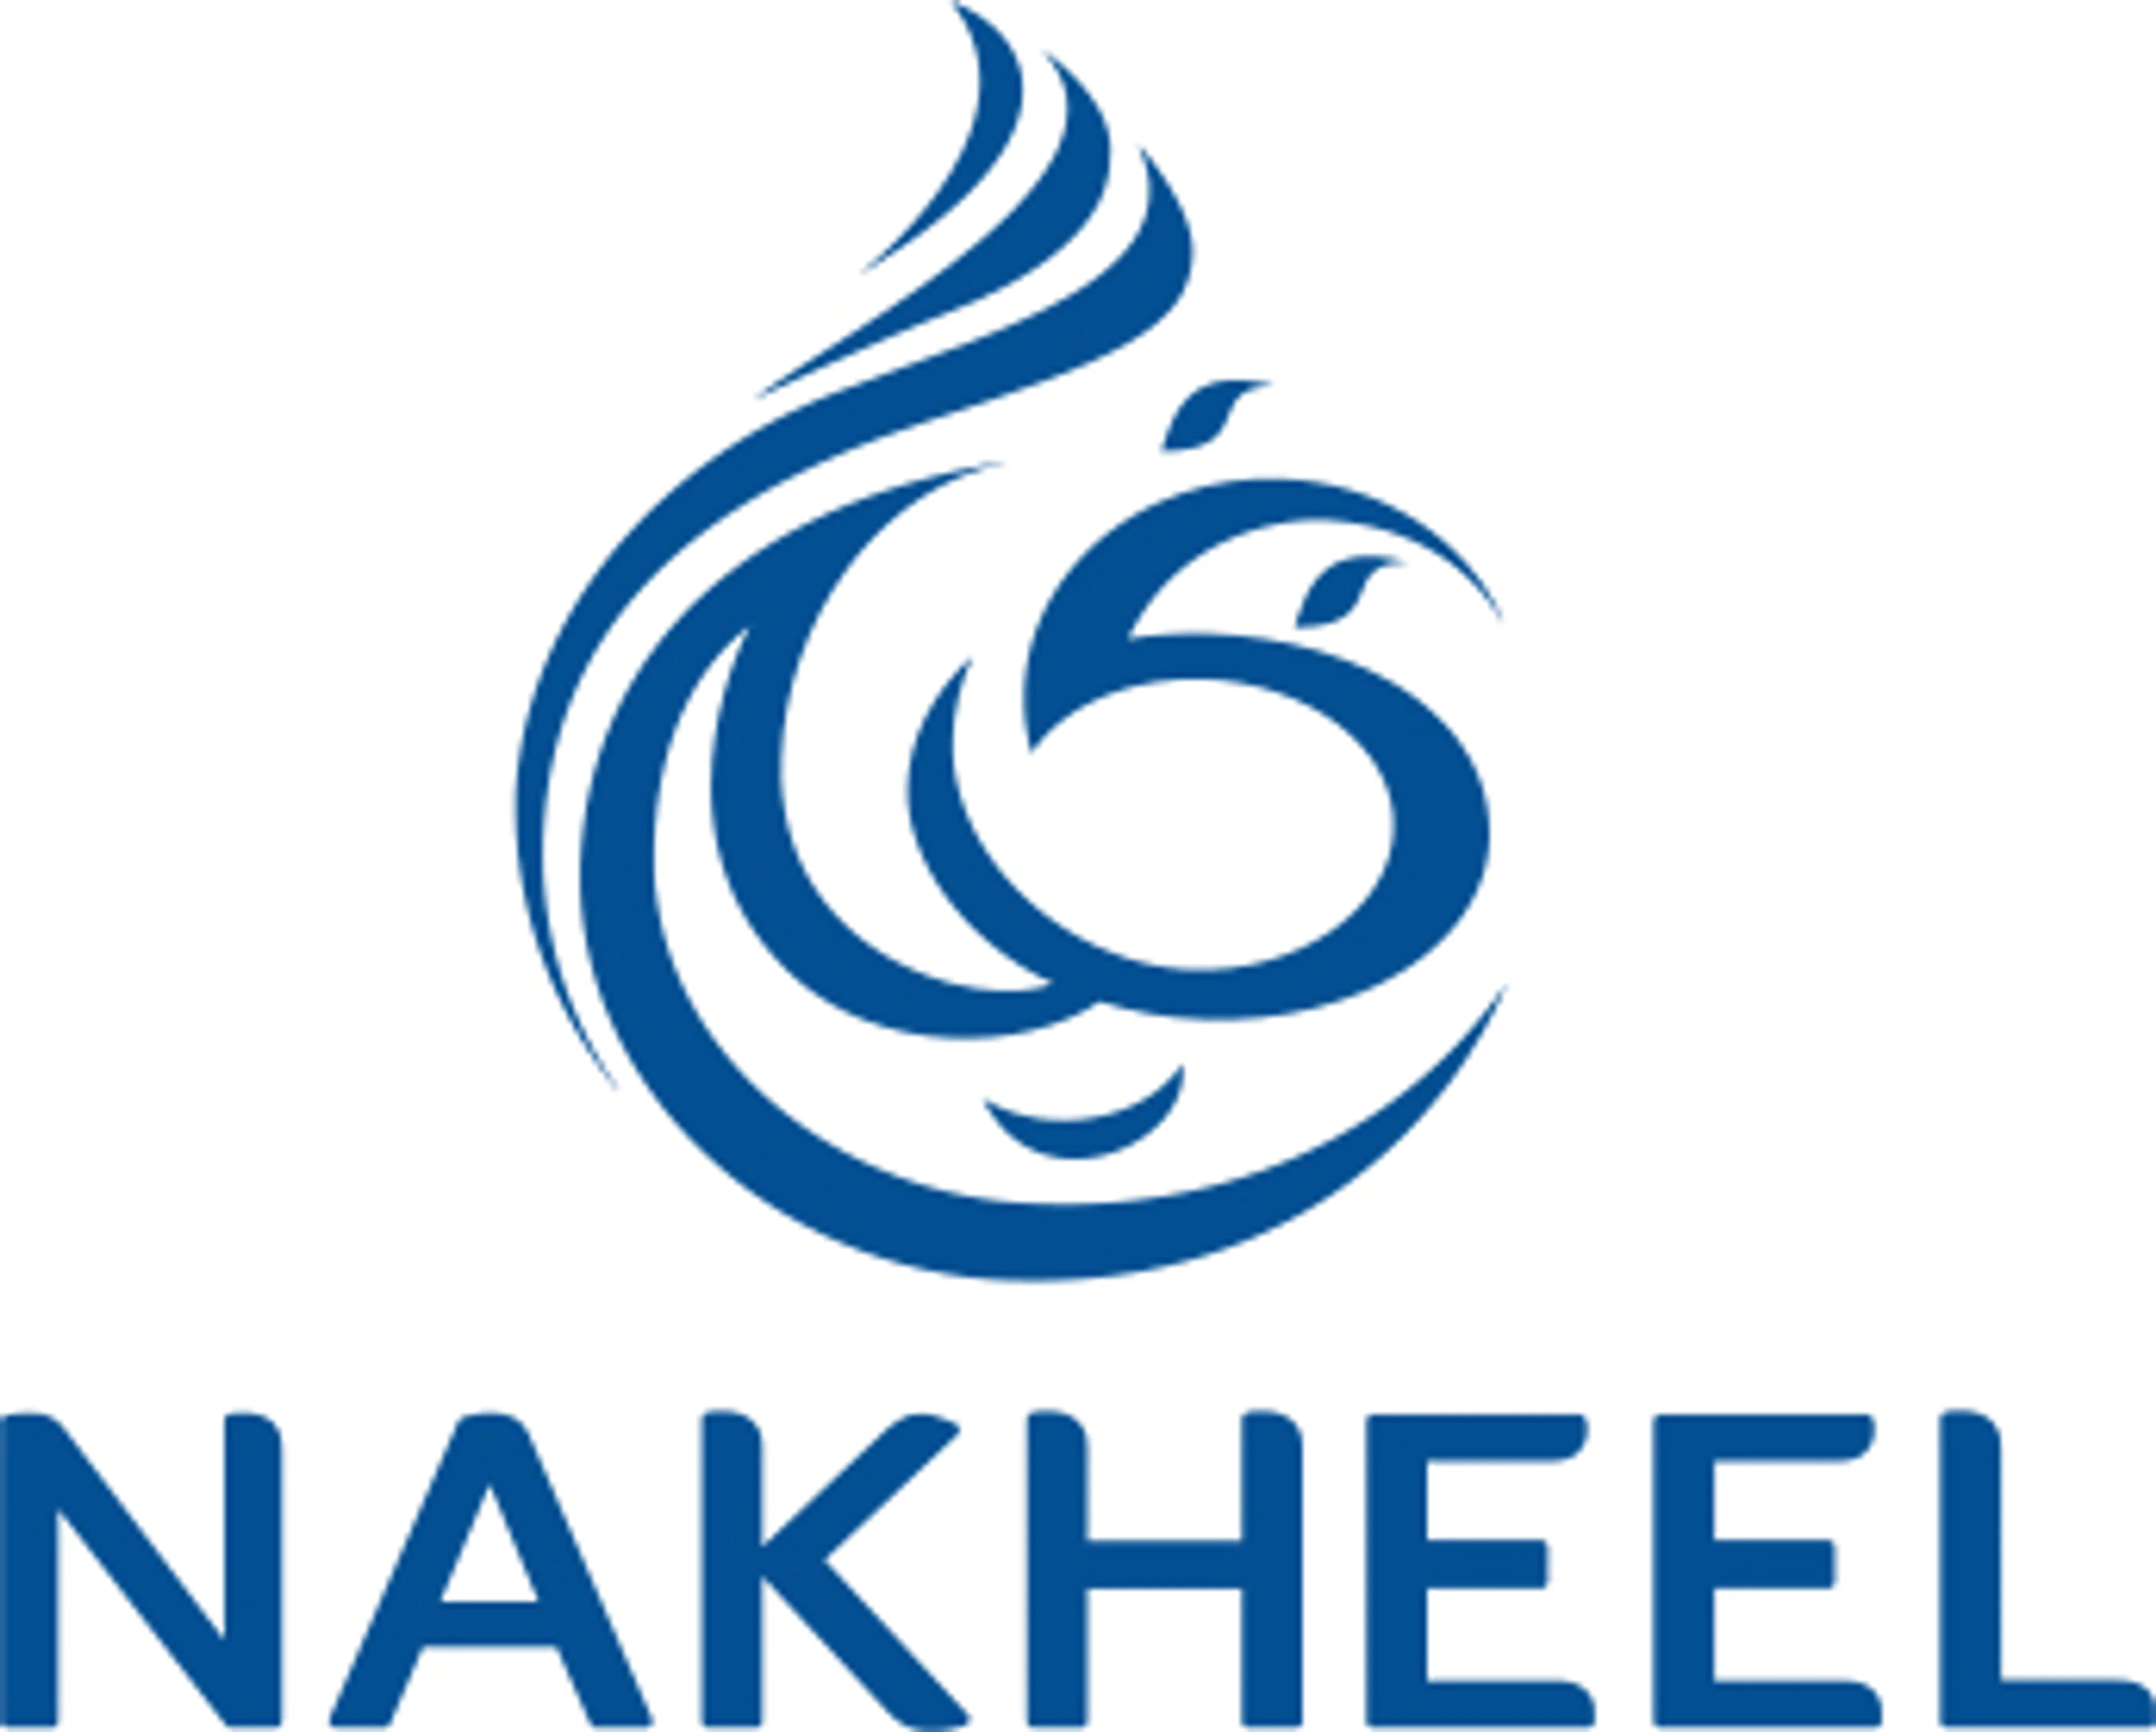 Logo of the real estate developer "Nakheel"